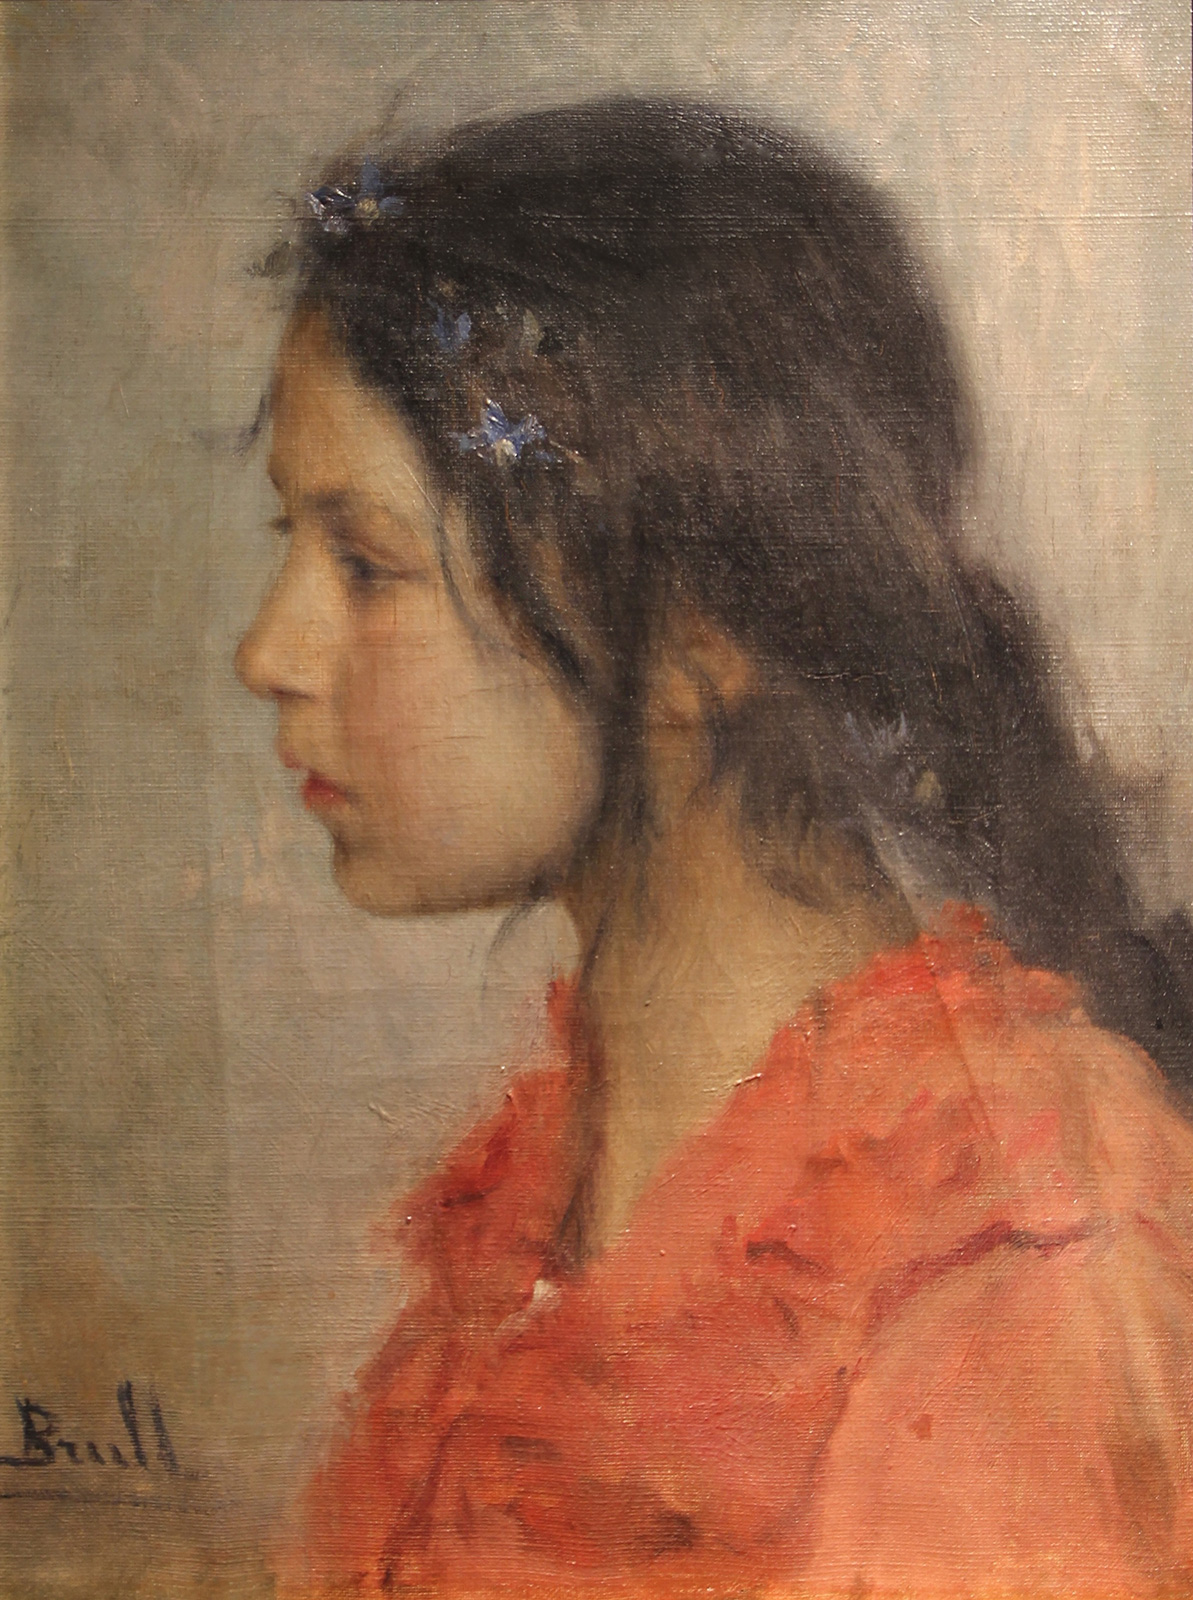 Joan+Brull-1863-1912 (21).jpg